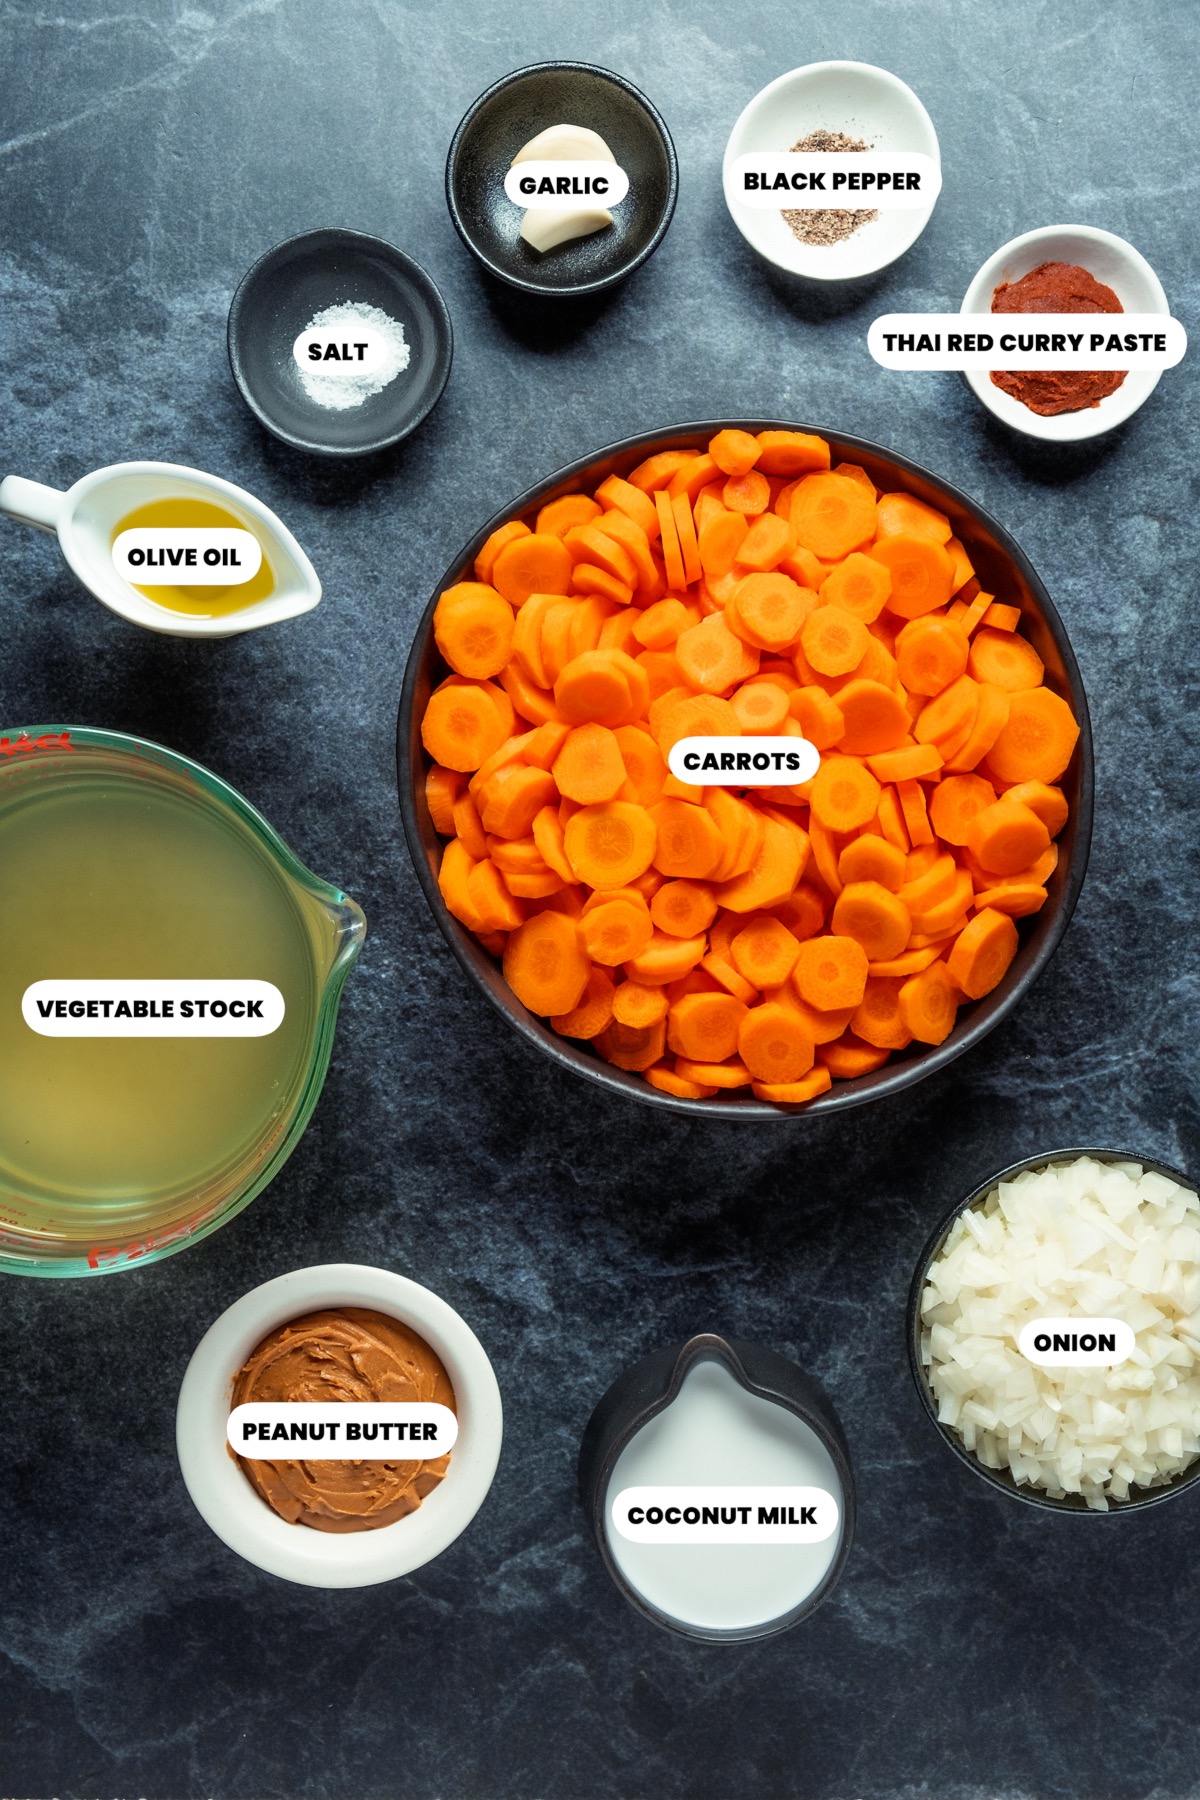 Ingredients to make vegan carrot soup.